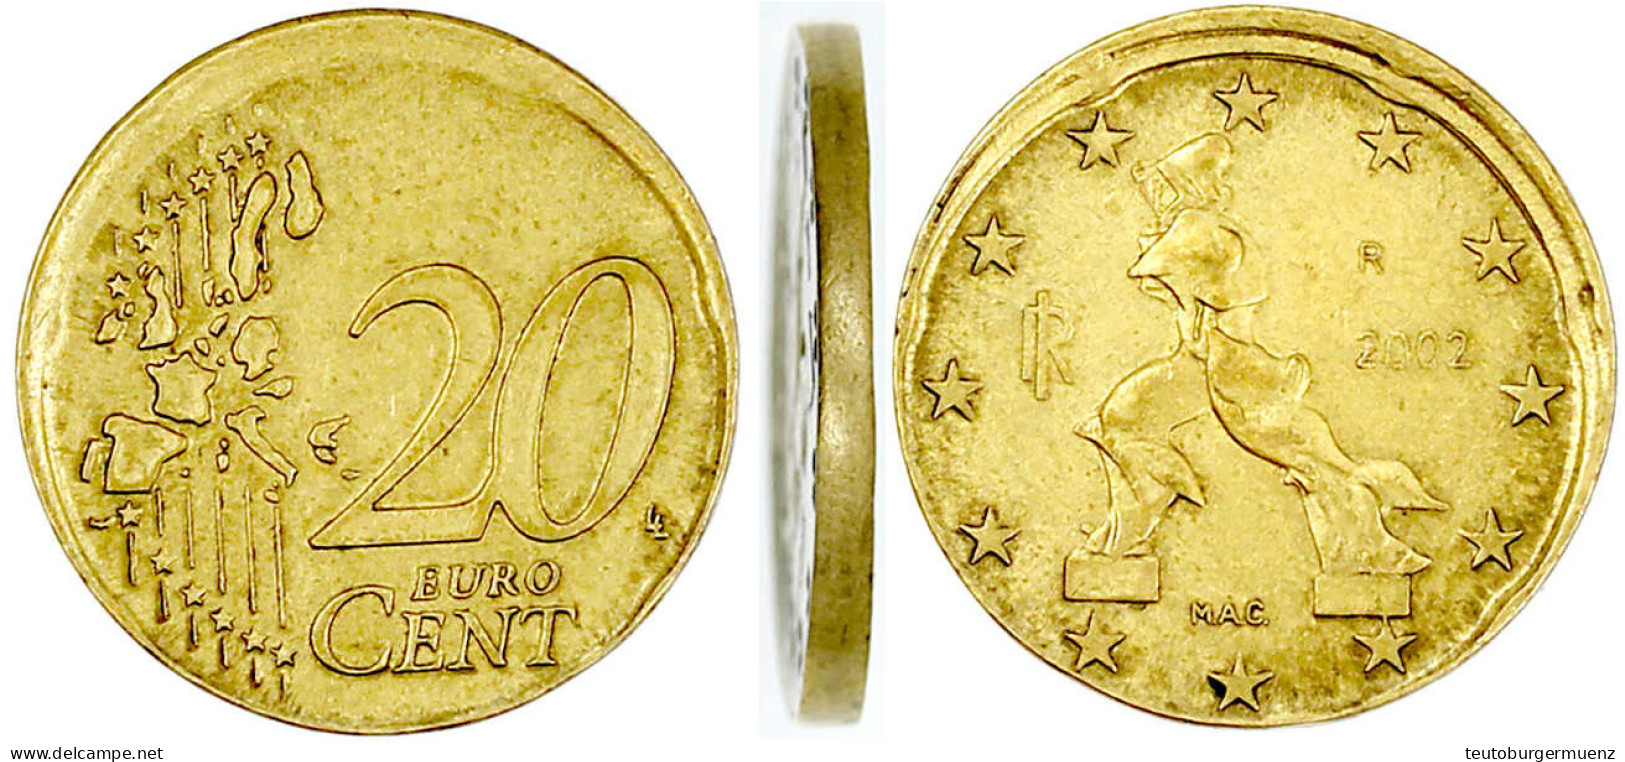 Frankreich 20 Euro-Cent 2002 Ohne Randprägung Und Etwas Dezentriert (vermutlich Aus Prägeform Gesprungen). Vorzüglich, S - Allemagne